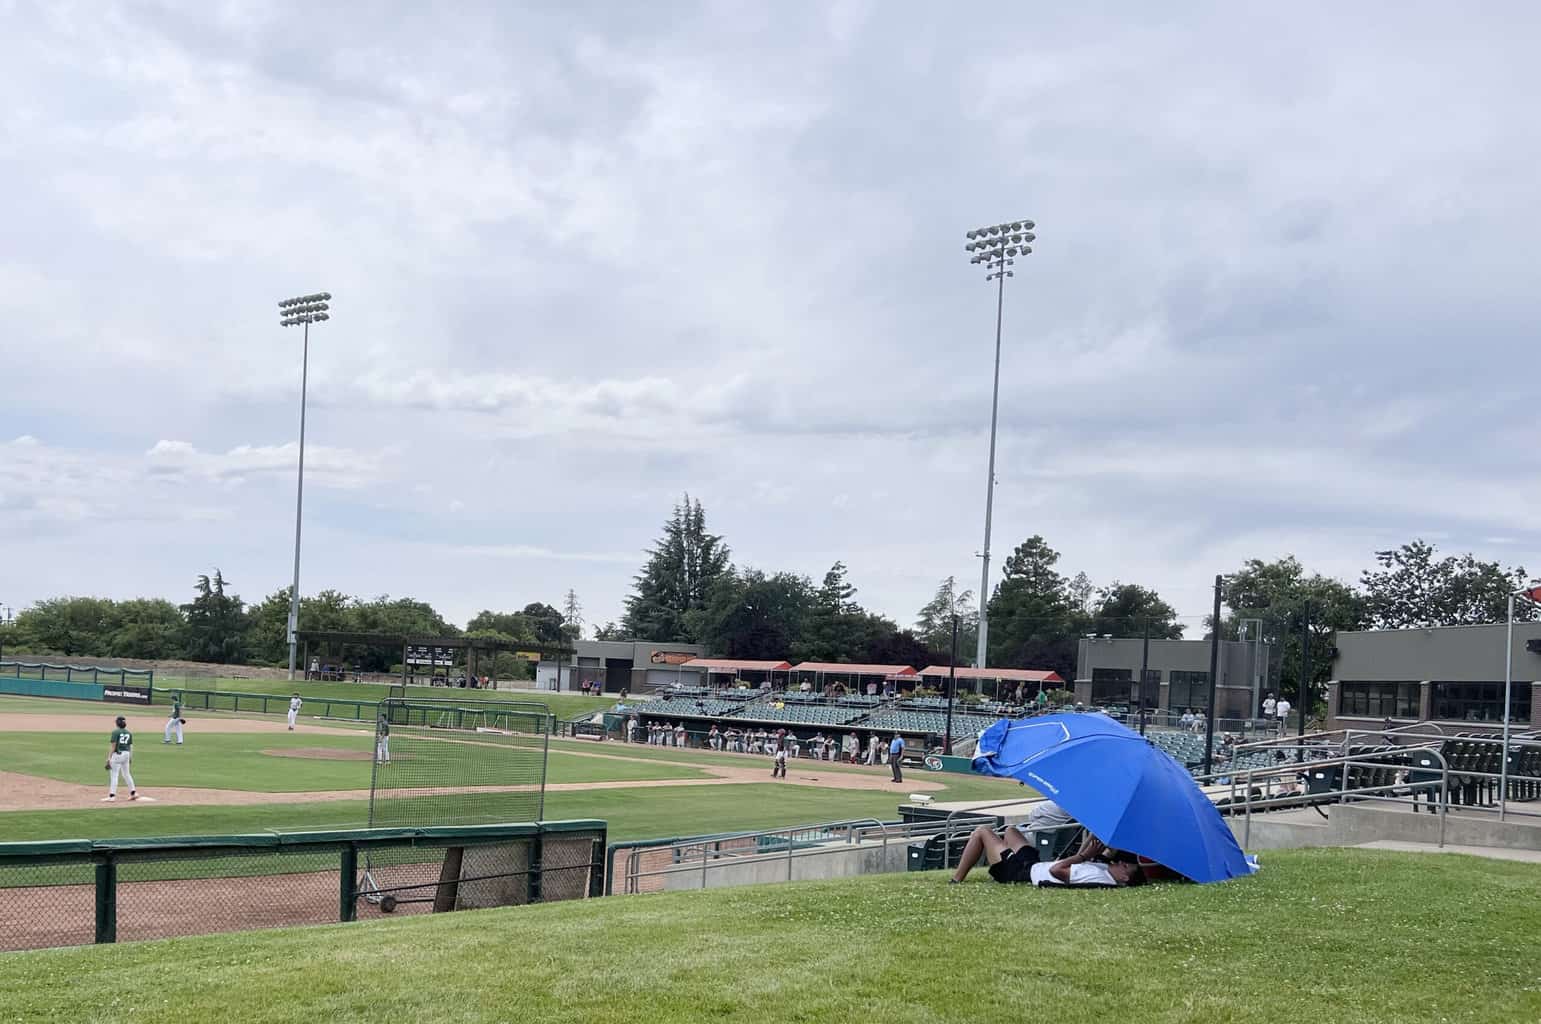 pop up umbrella at baseball tournament